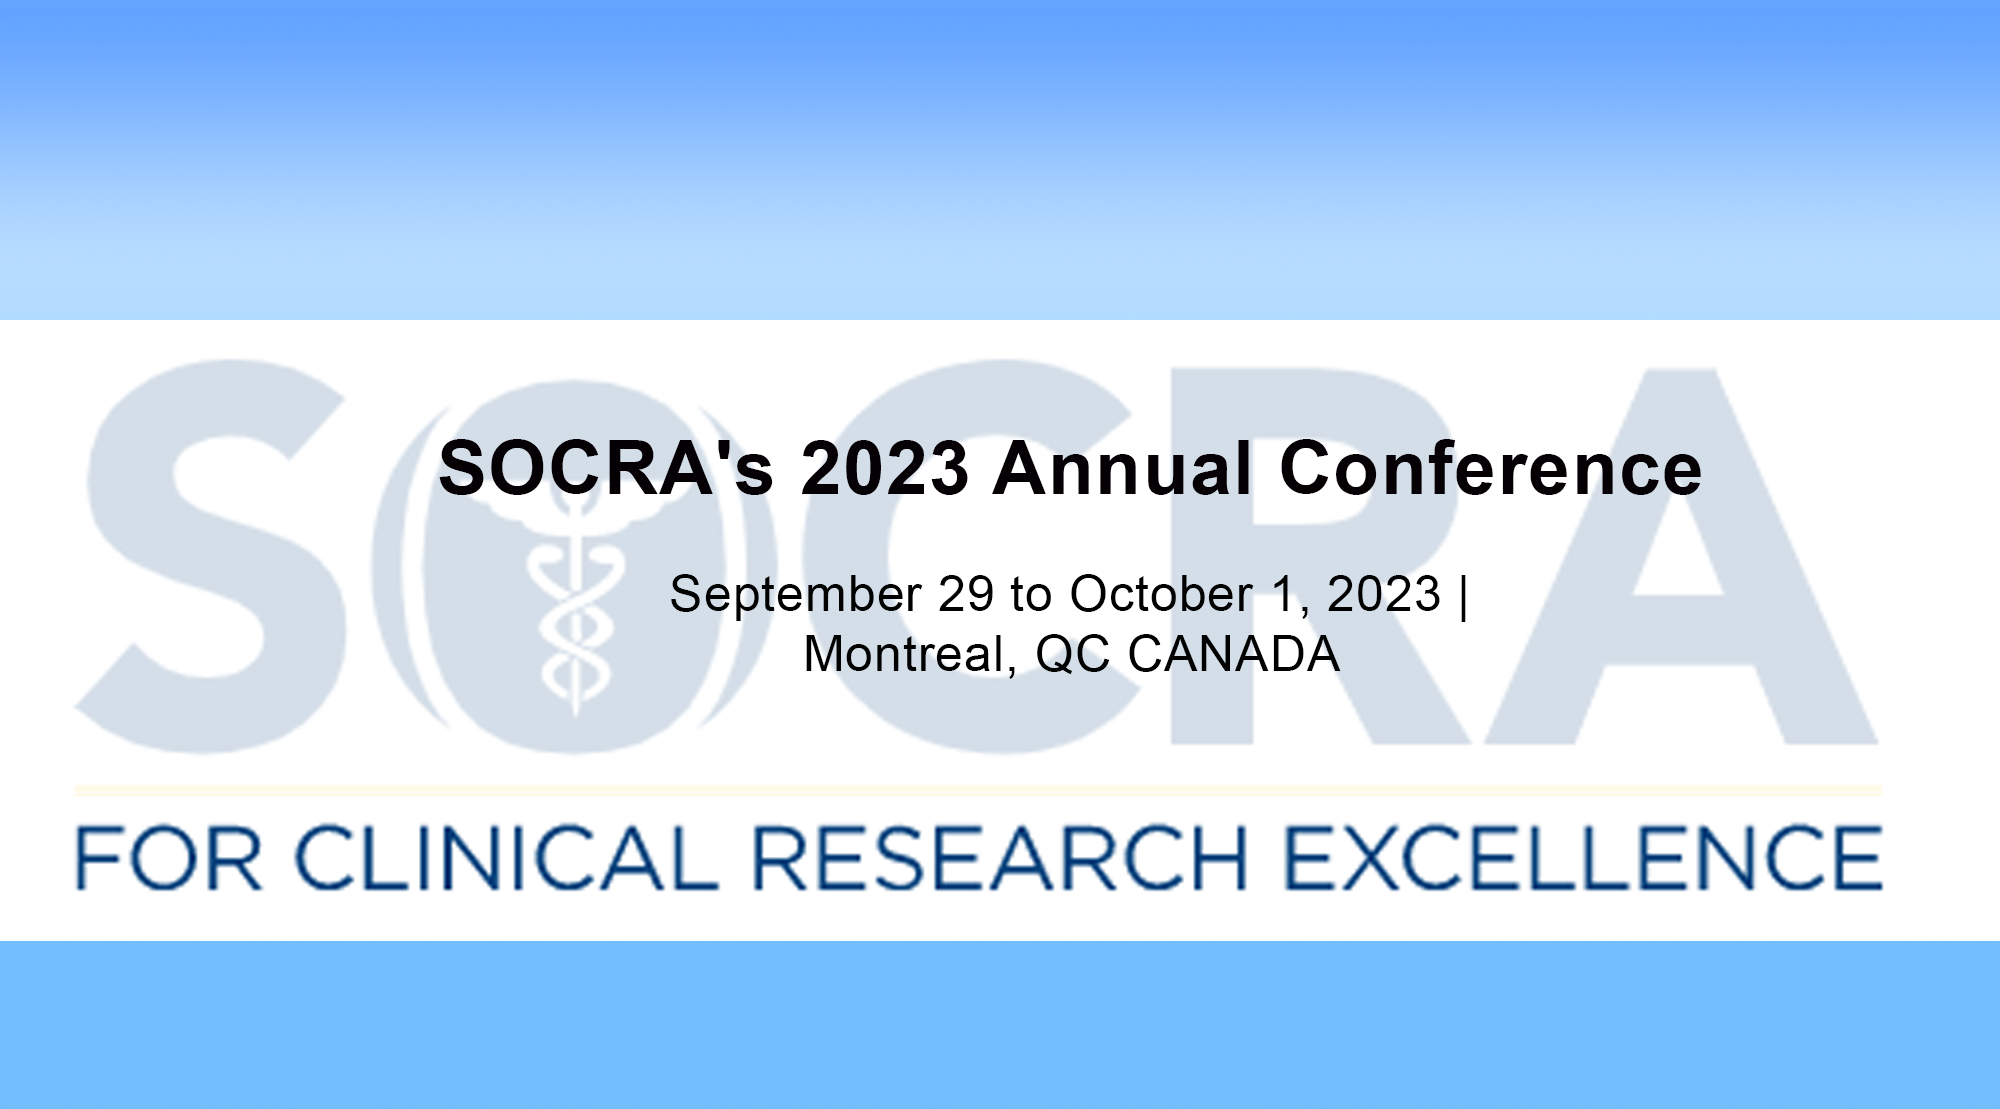 SOCRA's 2023 Annual Conference